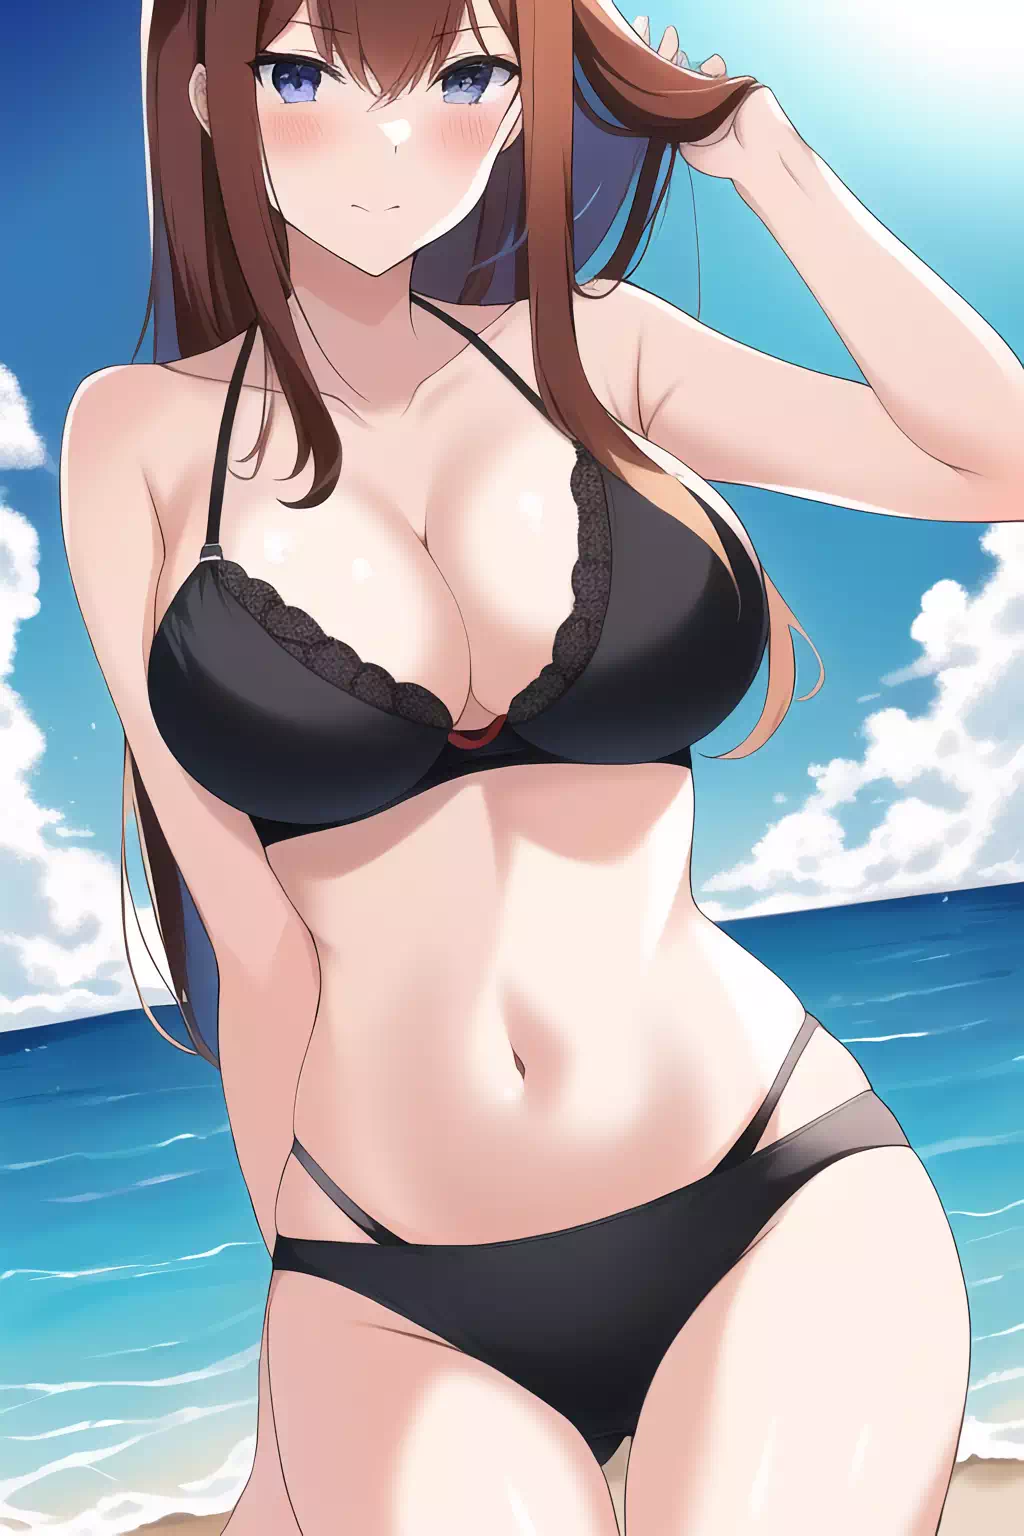 Kurisu at the beach (AI)